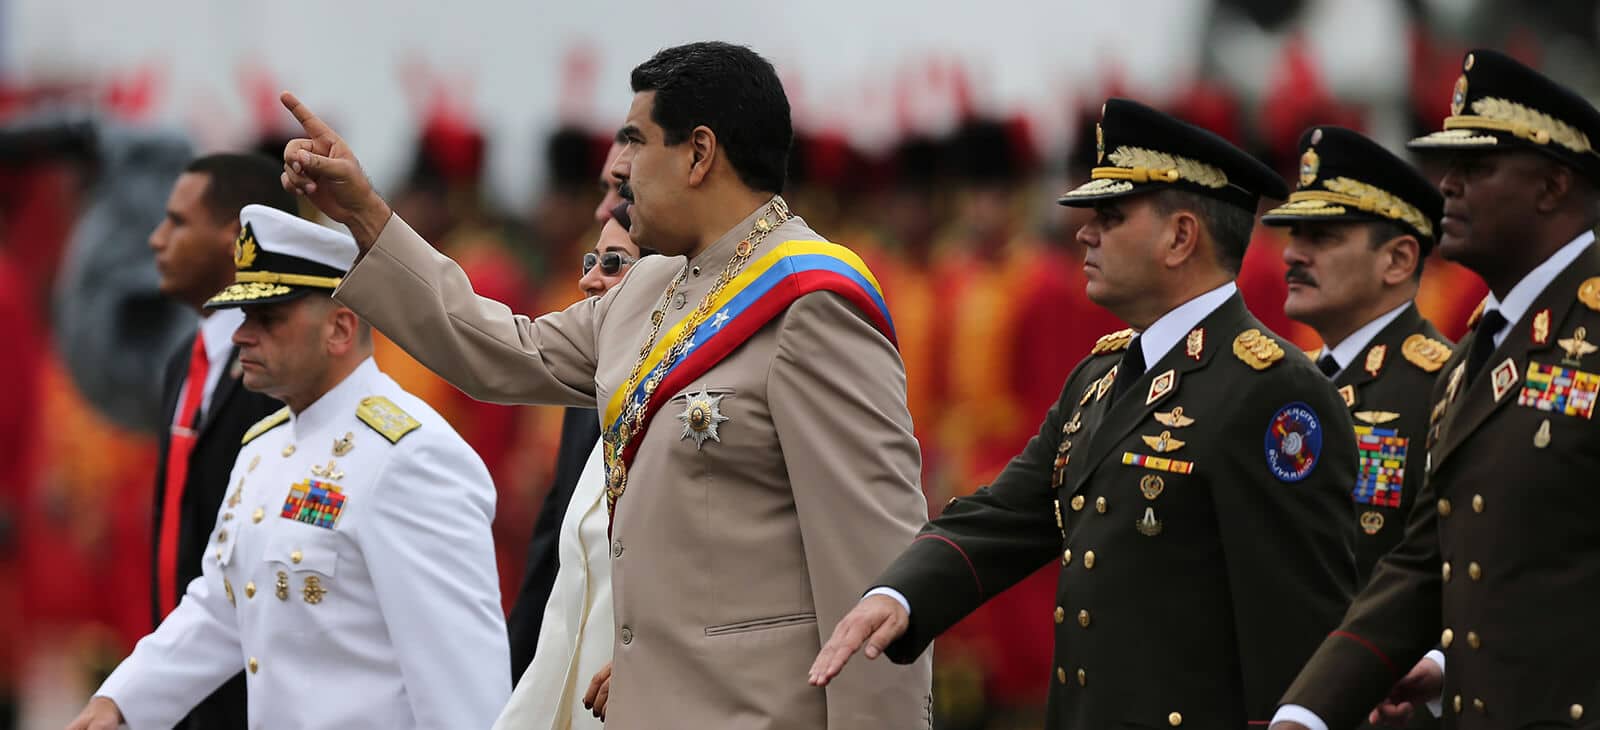 MiliciaPuebloEnArmas - Tirania de Nicolas Maduro - Página 30 2-President-Nicolas-Maduro-walks-with-the-Army-commanders-baton-in-hand-Army-Day-Caracas-24-06-2017-Credit-Fernando-Llano-Venezuela-estado-mafia-Cartel-de-los-soles-AP_-17175685679097-copy